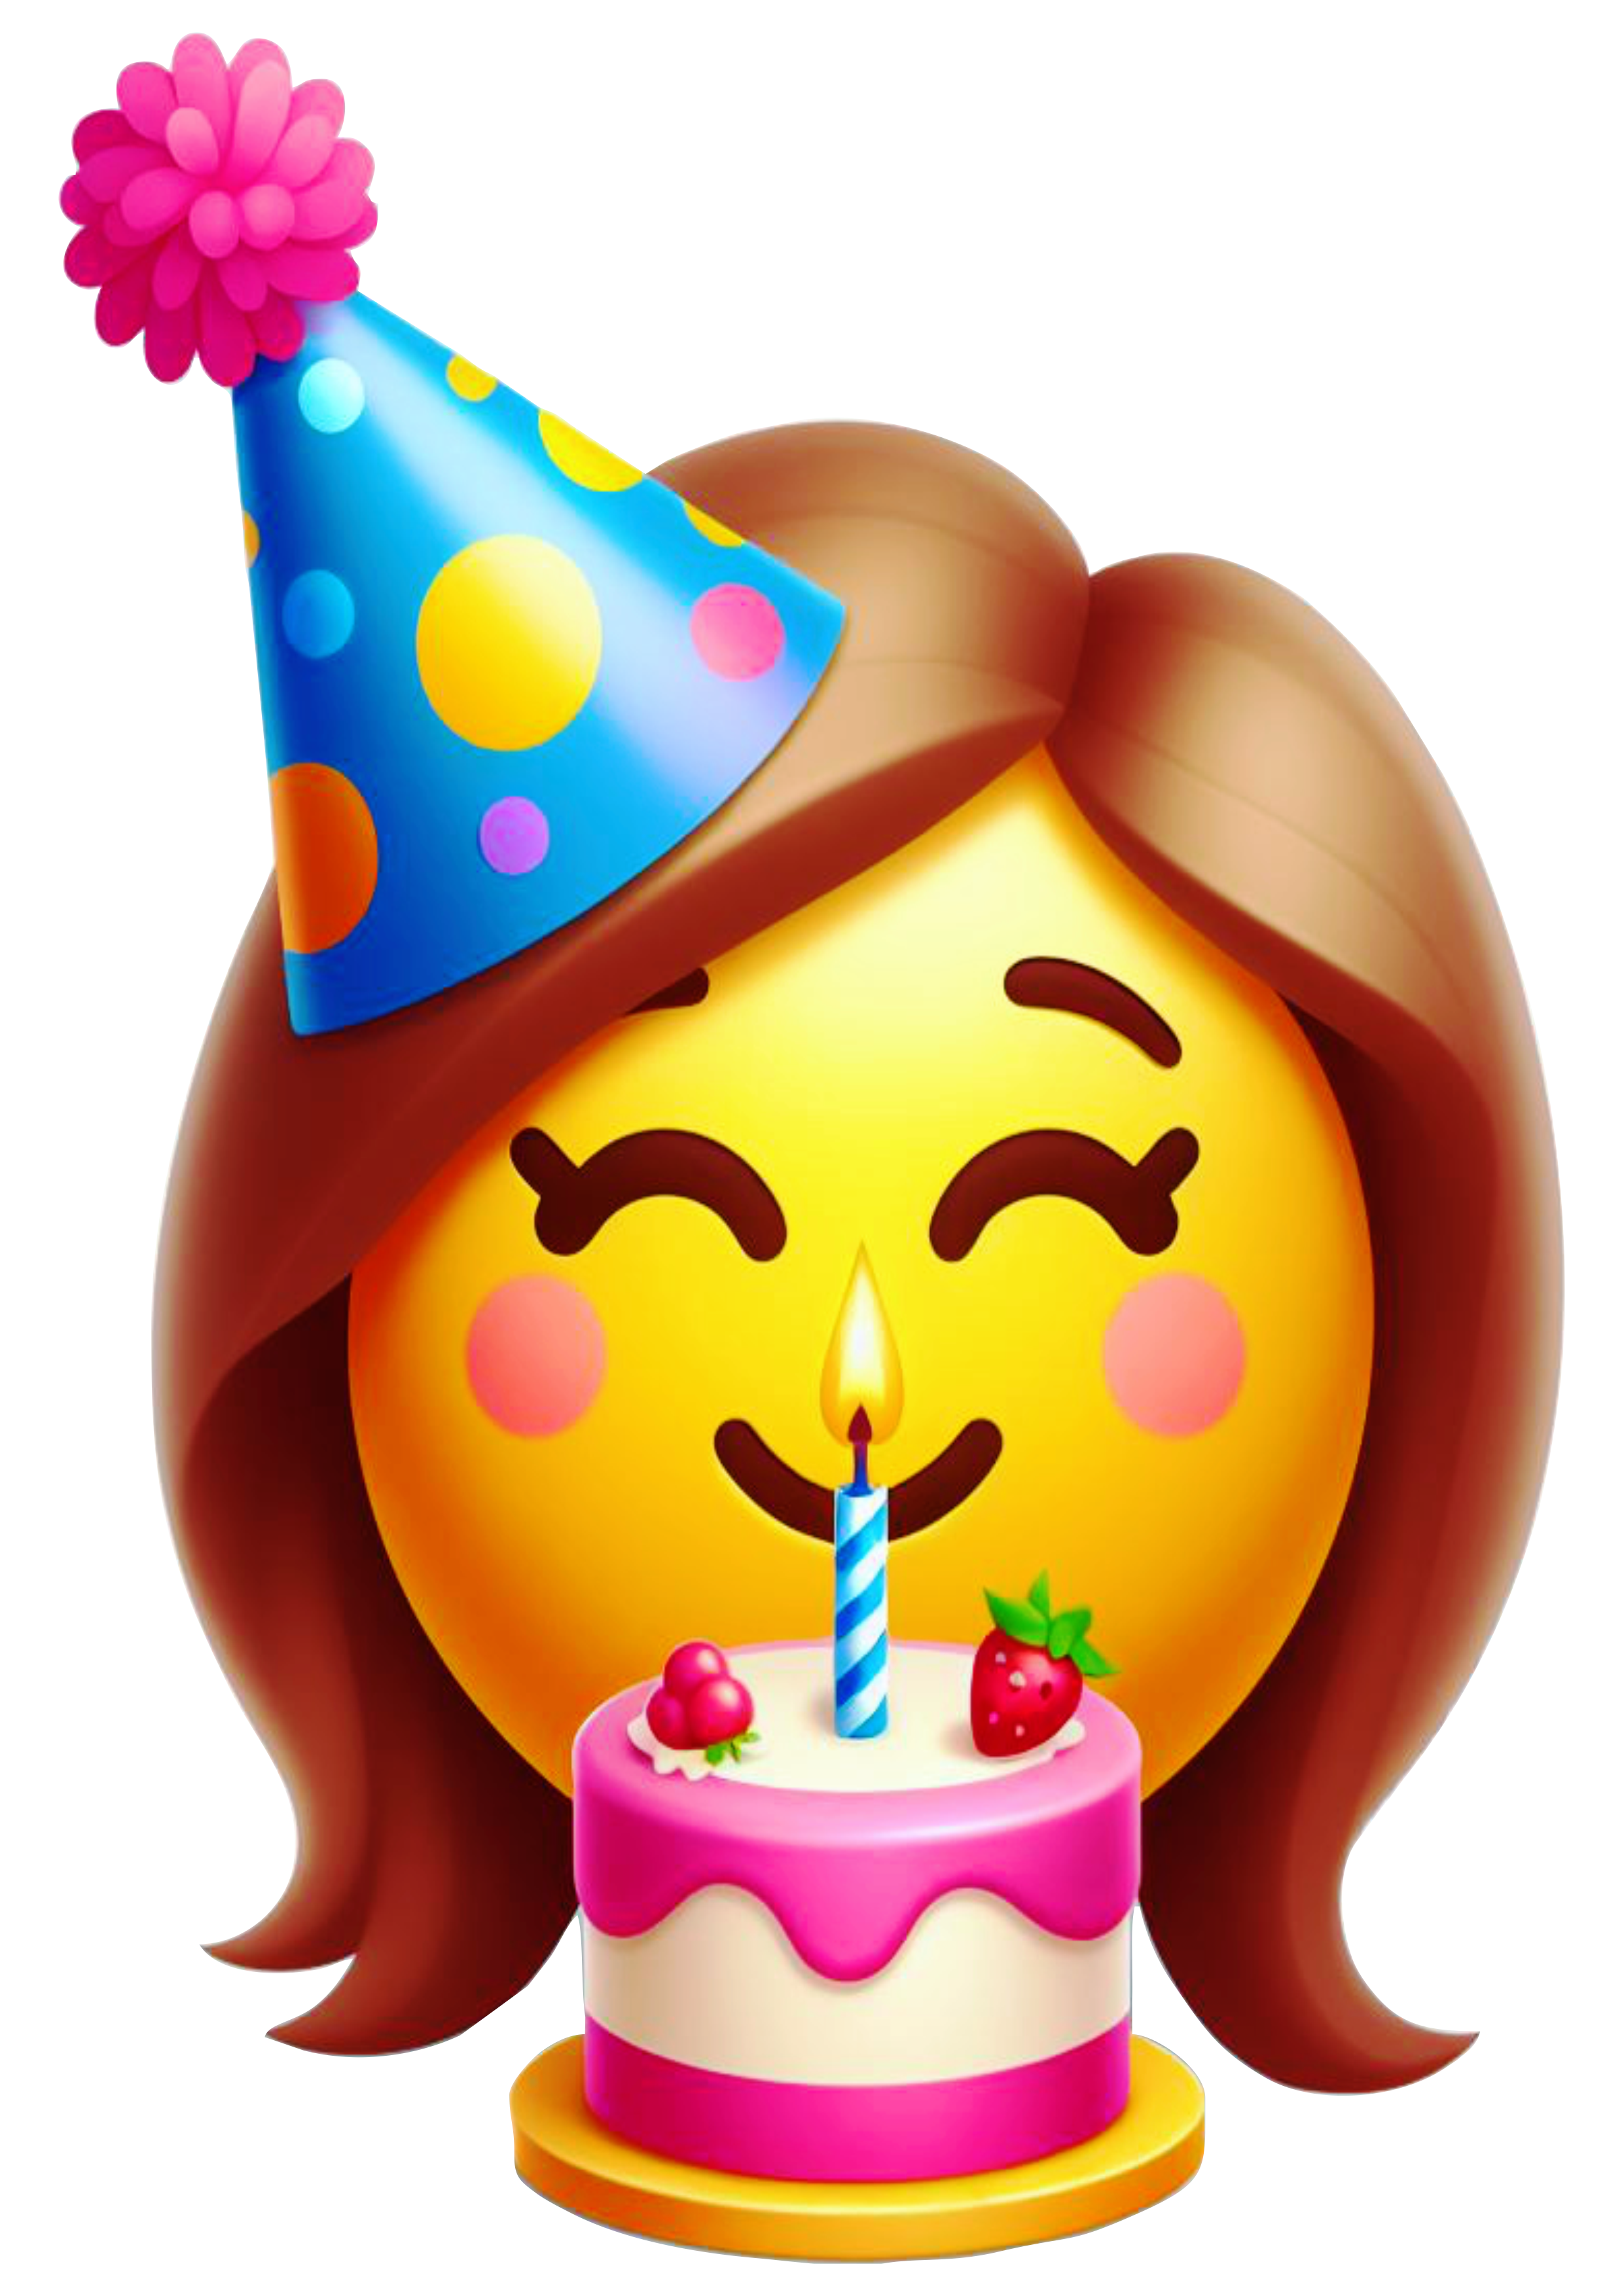 Feliz aniversário Emoji bolo parabéns figurinha engraçada whatsapp instagram facebook redes sociais artes gráficas vetor png